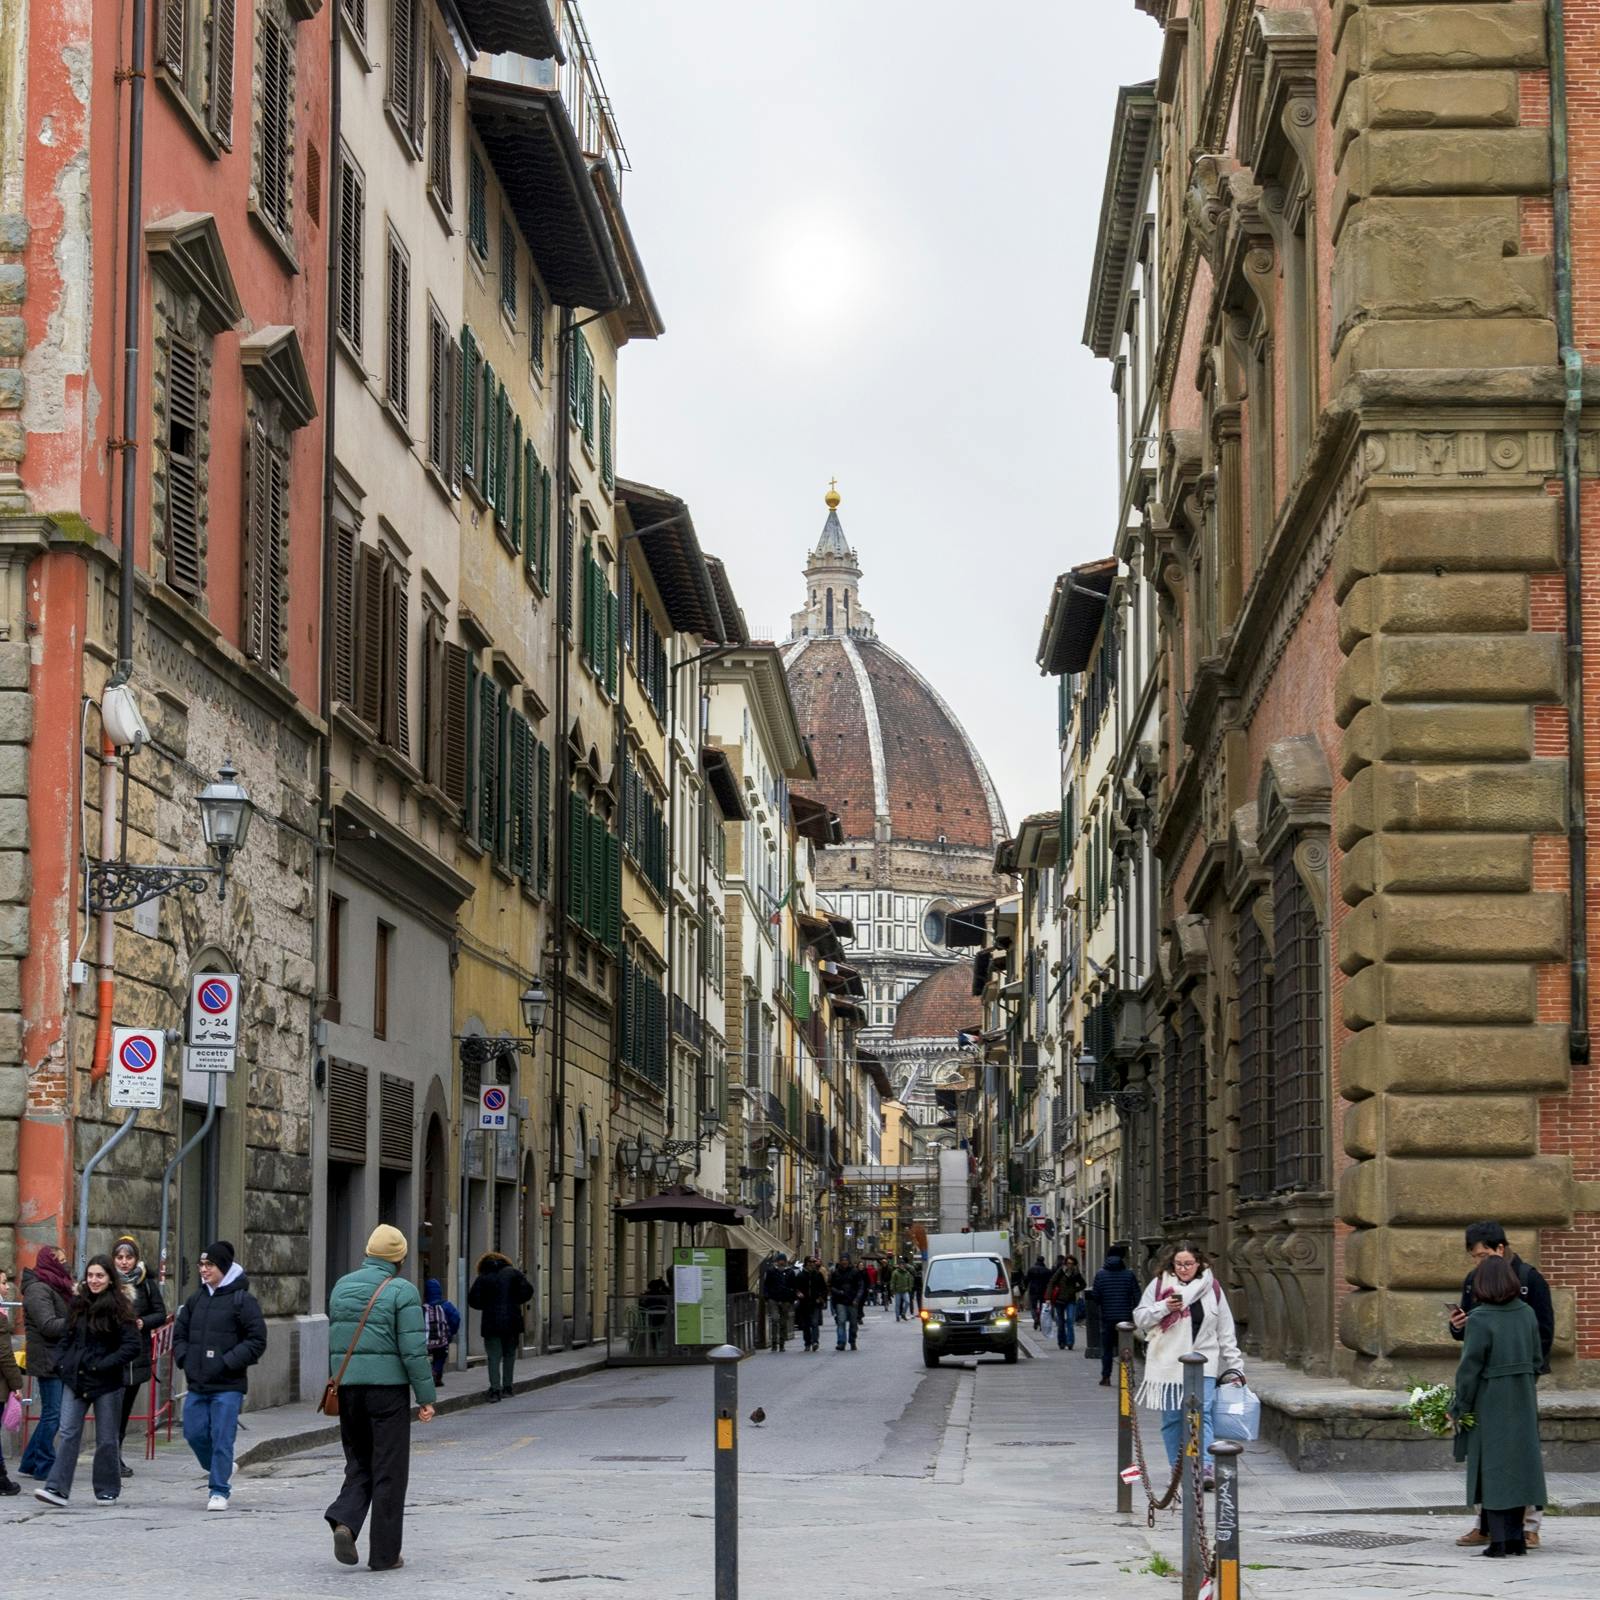 Destaques e joias escondidas da caminhada interativa de descoberta de Florença